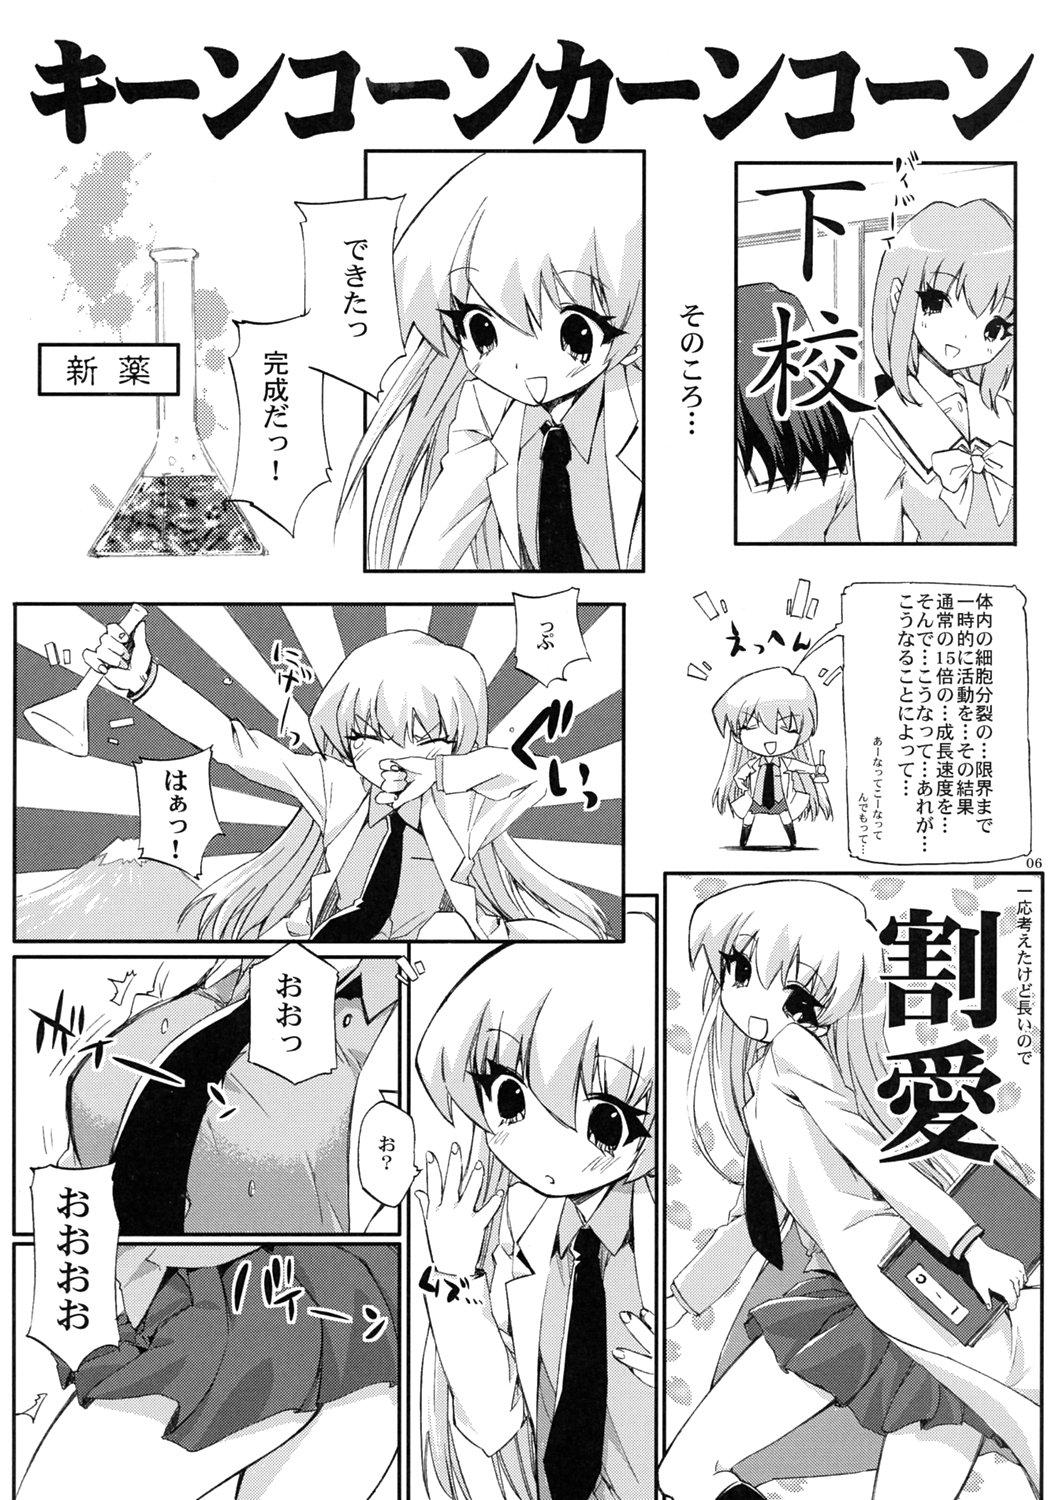 Tittyfuck Tensai to Shikenkan to Hakui to Aoi Kami no Eroi Hon - Pani poni dash Vintage - Page 5